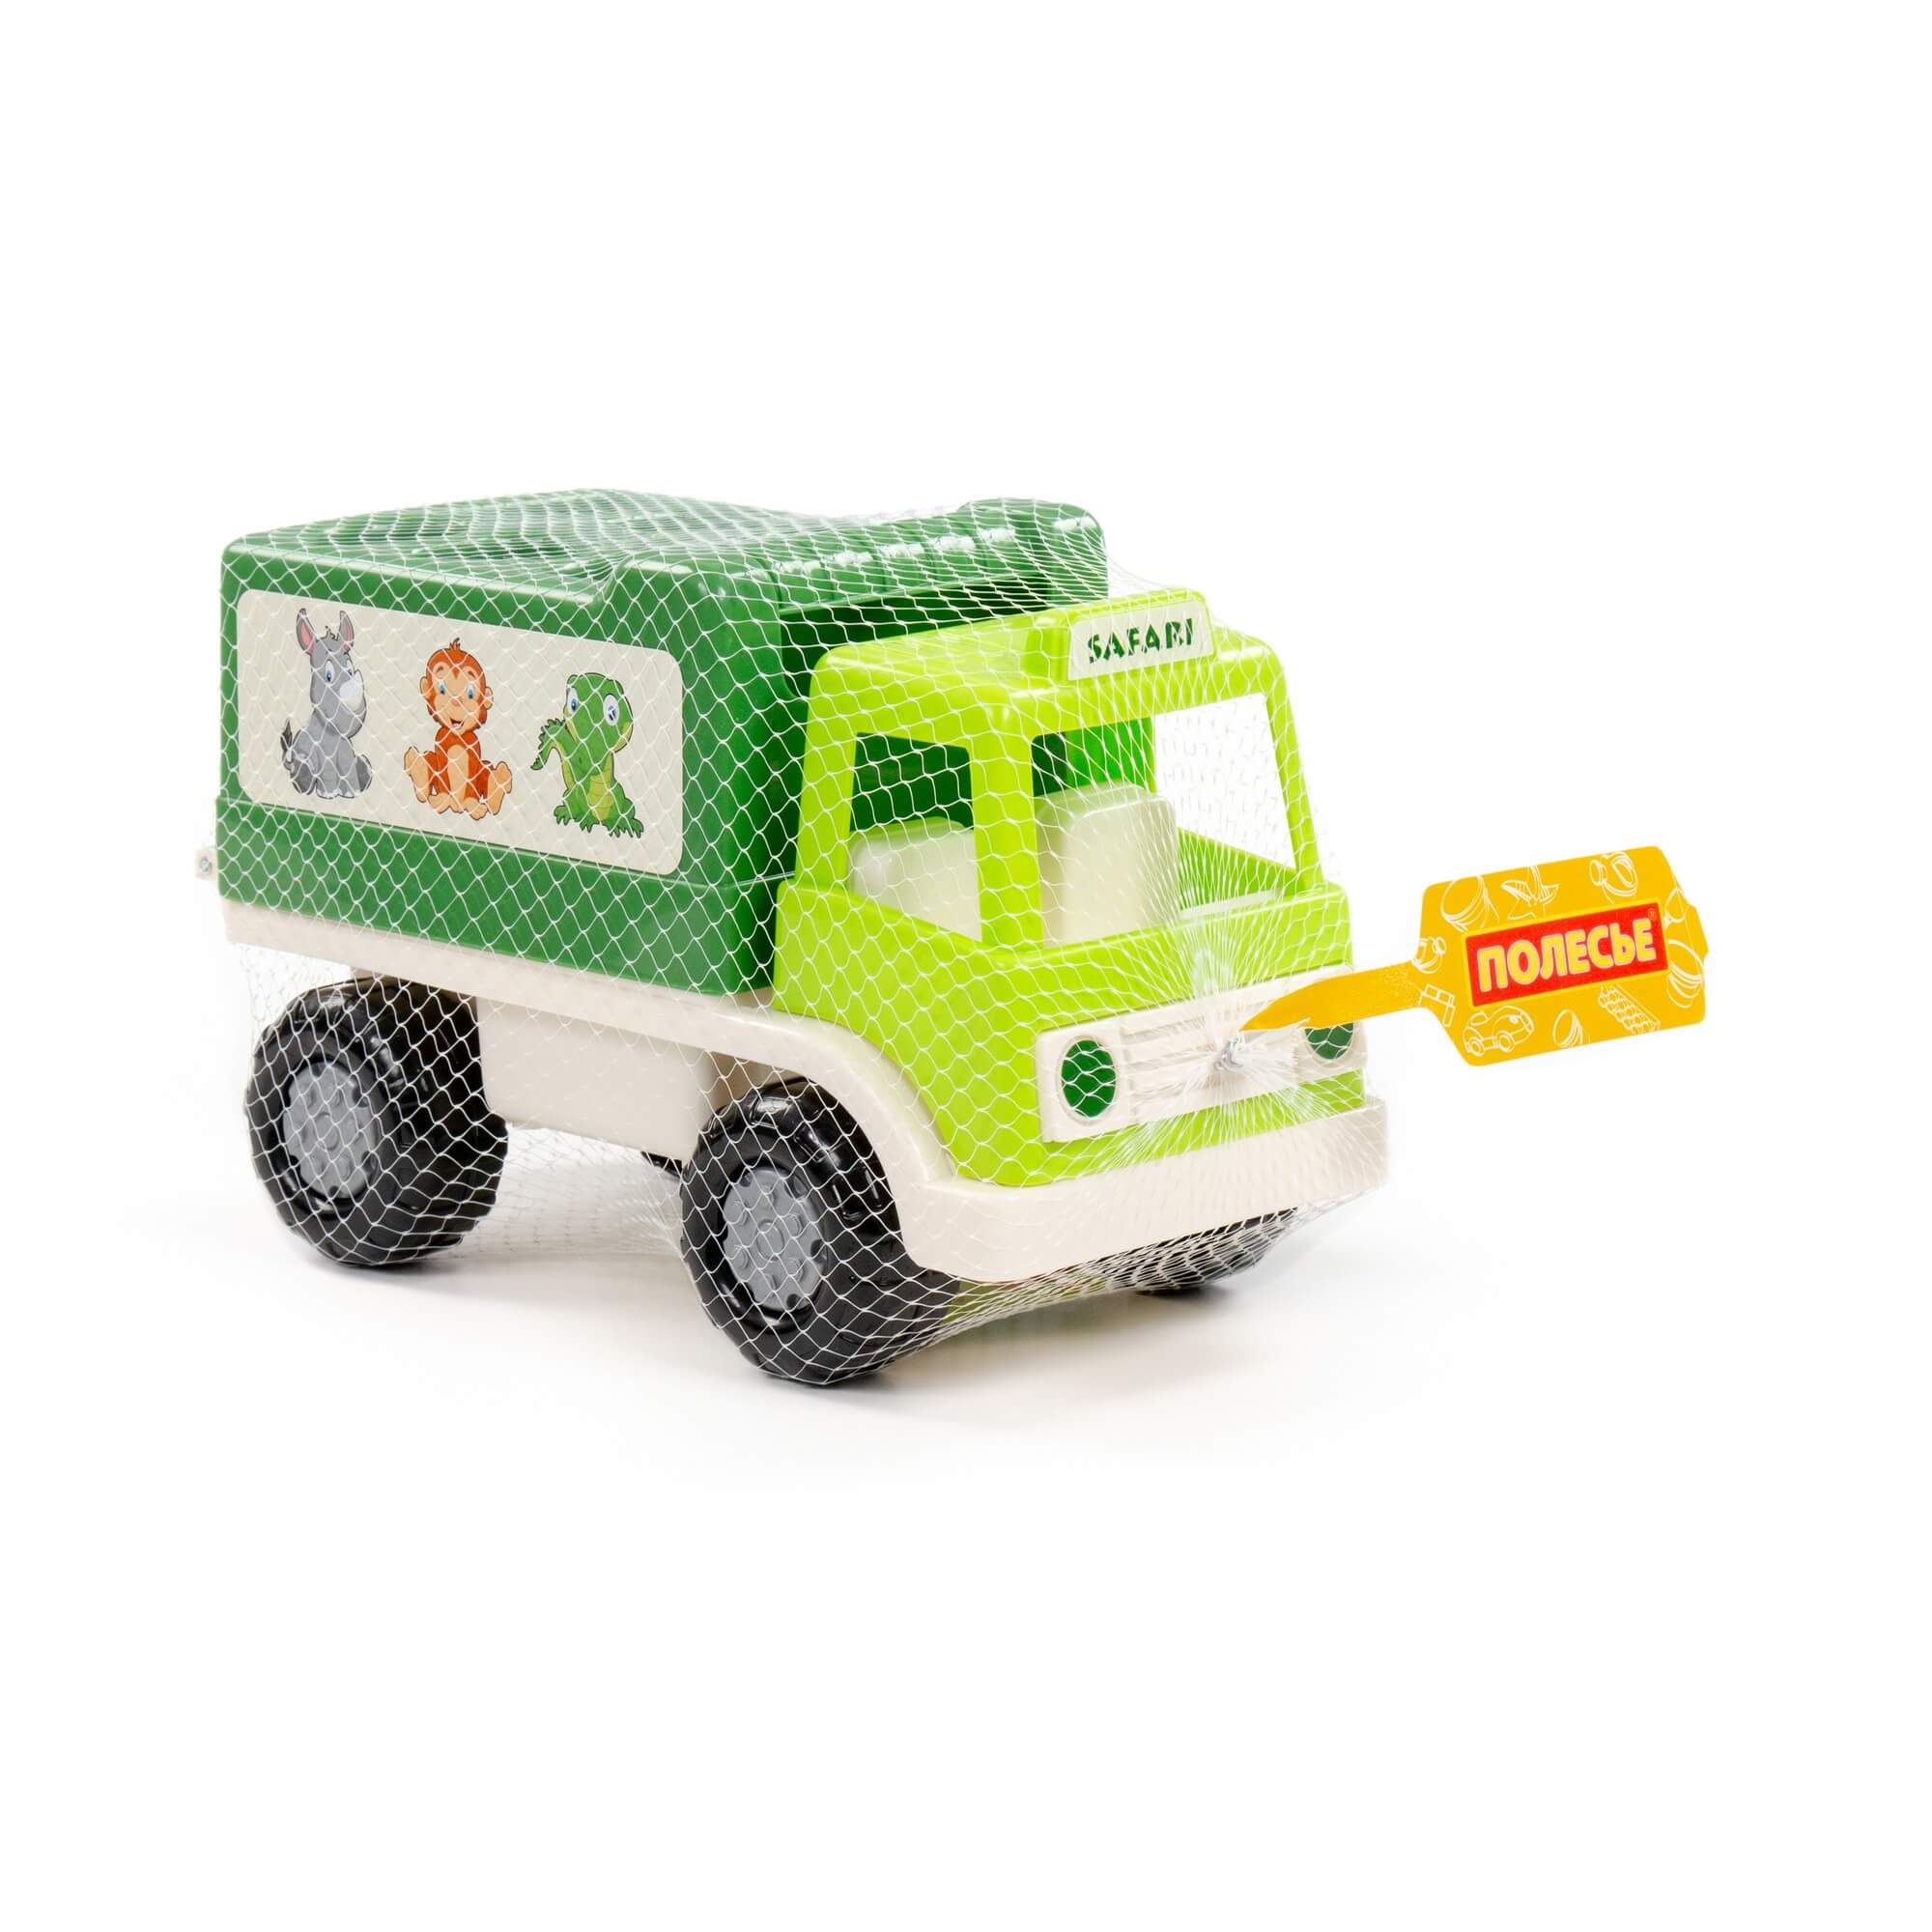 Грузовик "Забава" сафари 90270 зелёный | Магазин канцтоваров и игрушек Львёнок